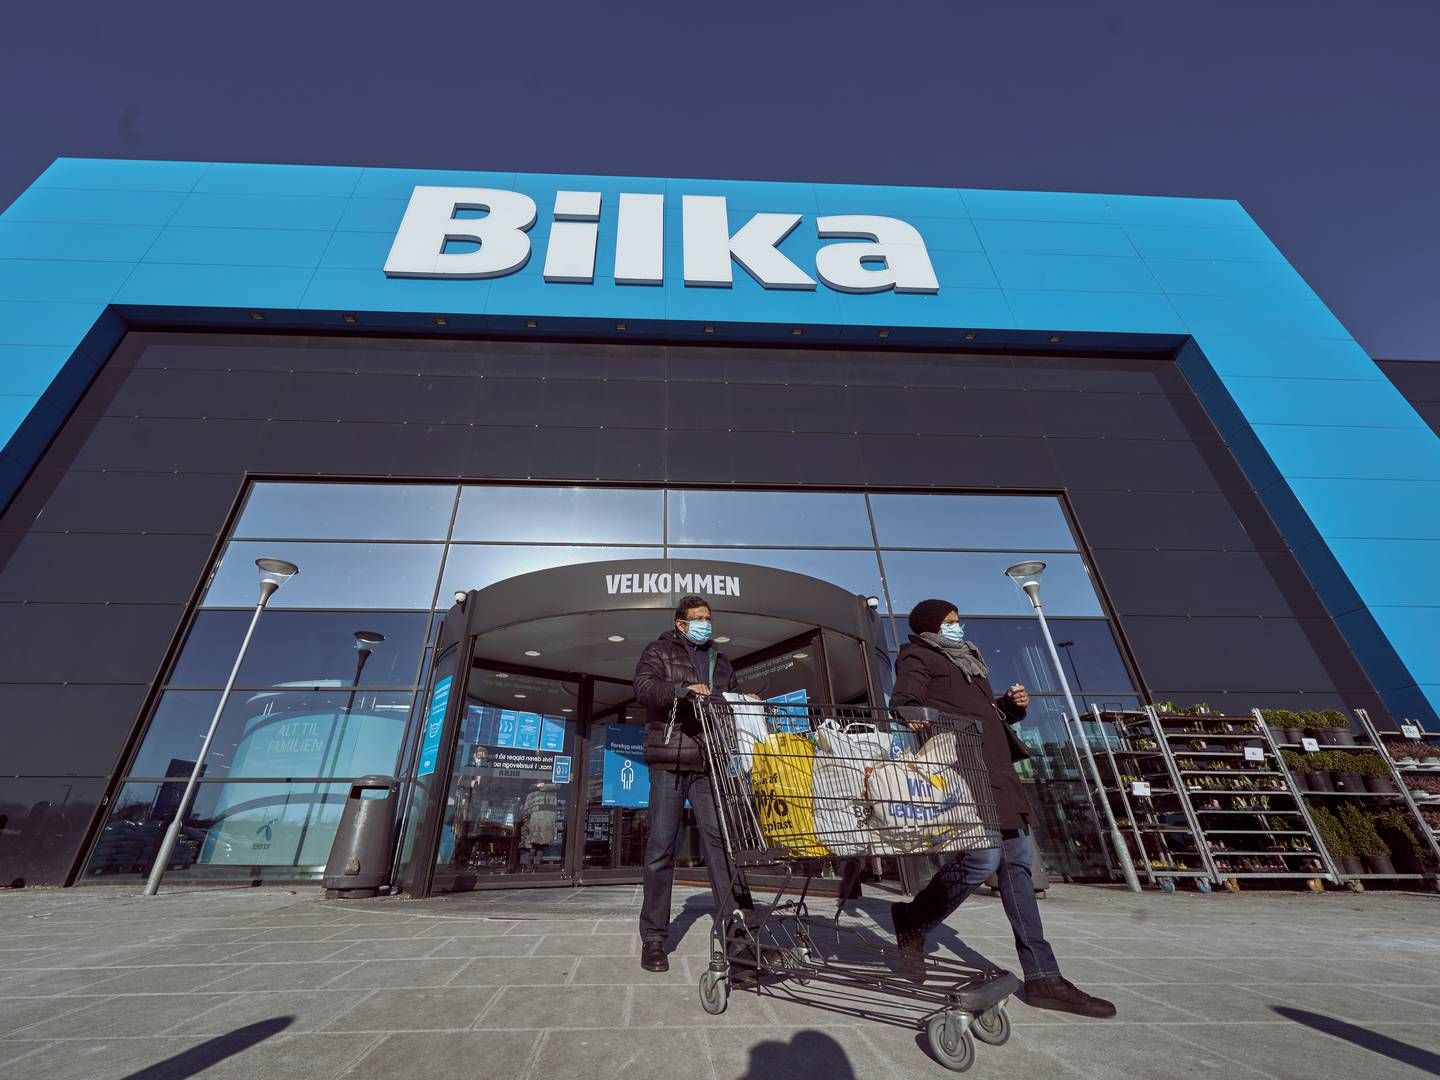 Parkeringsbåsene ved varehuse som Bilka skal muligvis være større ifølge Salling Group, der bl.a. står bag Bilka, BR, Føtex og Netto. | Foto: Claus Bonnerup